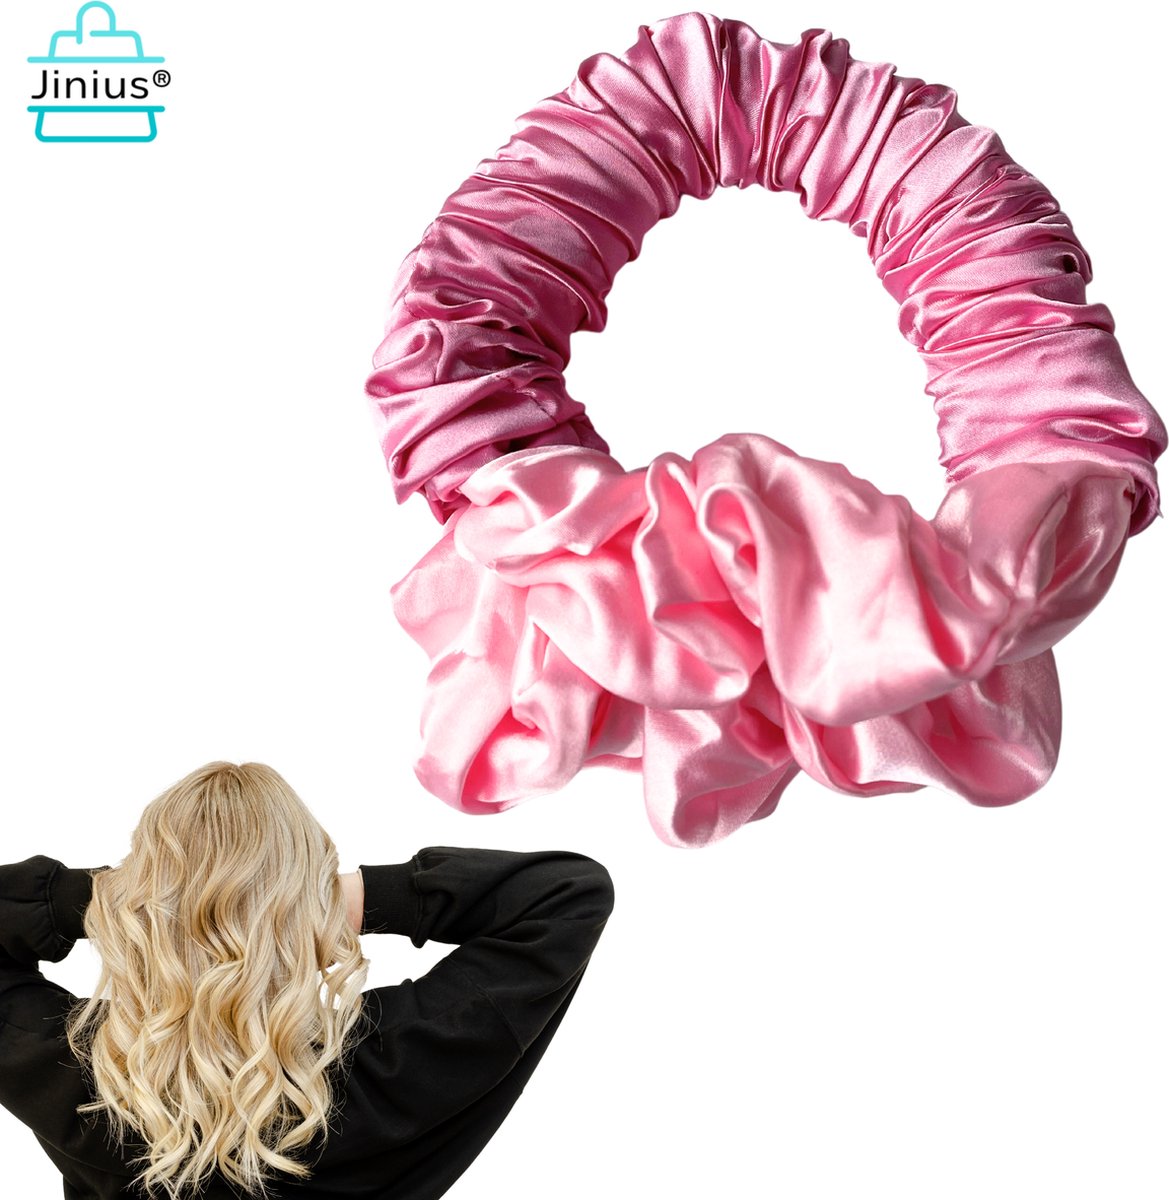 Jinius ® - Licht Roze - Heatless Scrunchie - Scrunchies - Krullen - Haar Krullen - Gezond Haar- Curls - Haar Krullen Zonder Hitte - Hittevrije Krullen - Haarkrullers - Bekend van TikTok